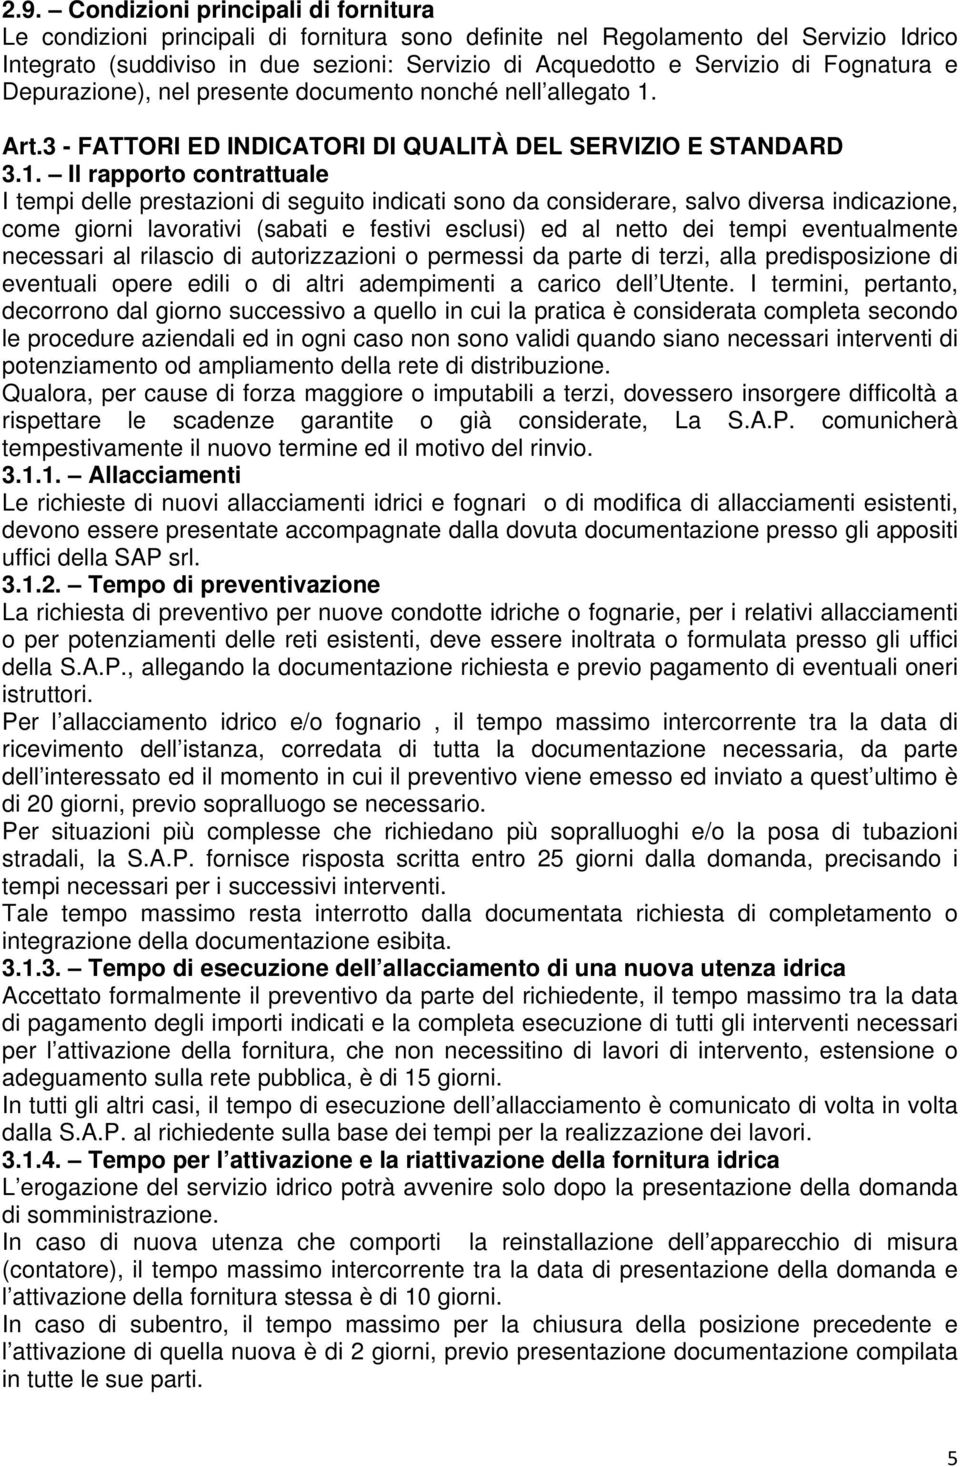 Art.3 - FATTORI ED INDICATORI DI QUALITÀ DEL SERVIZIO E STANDARD 3.1.